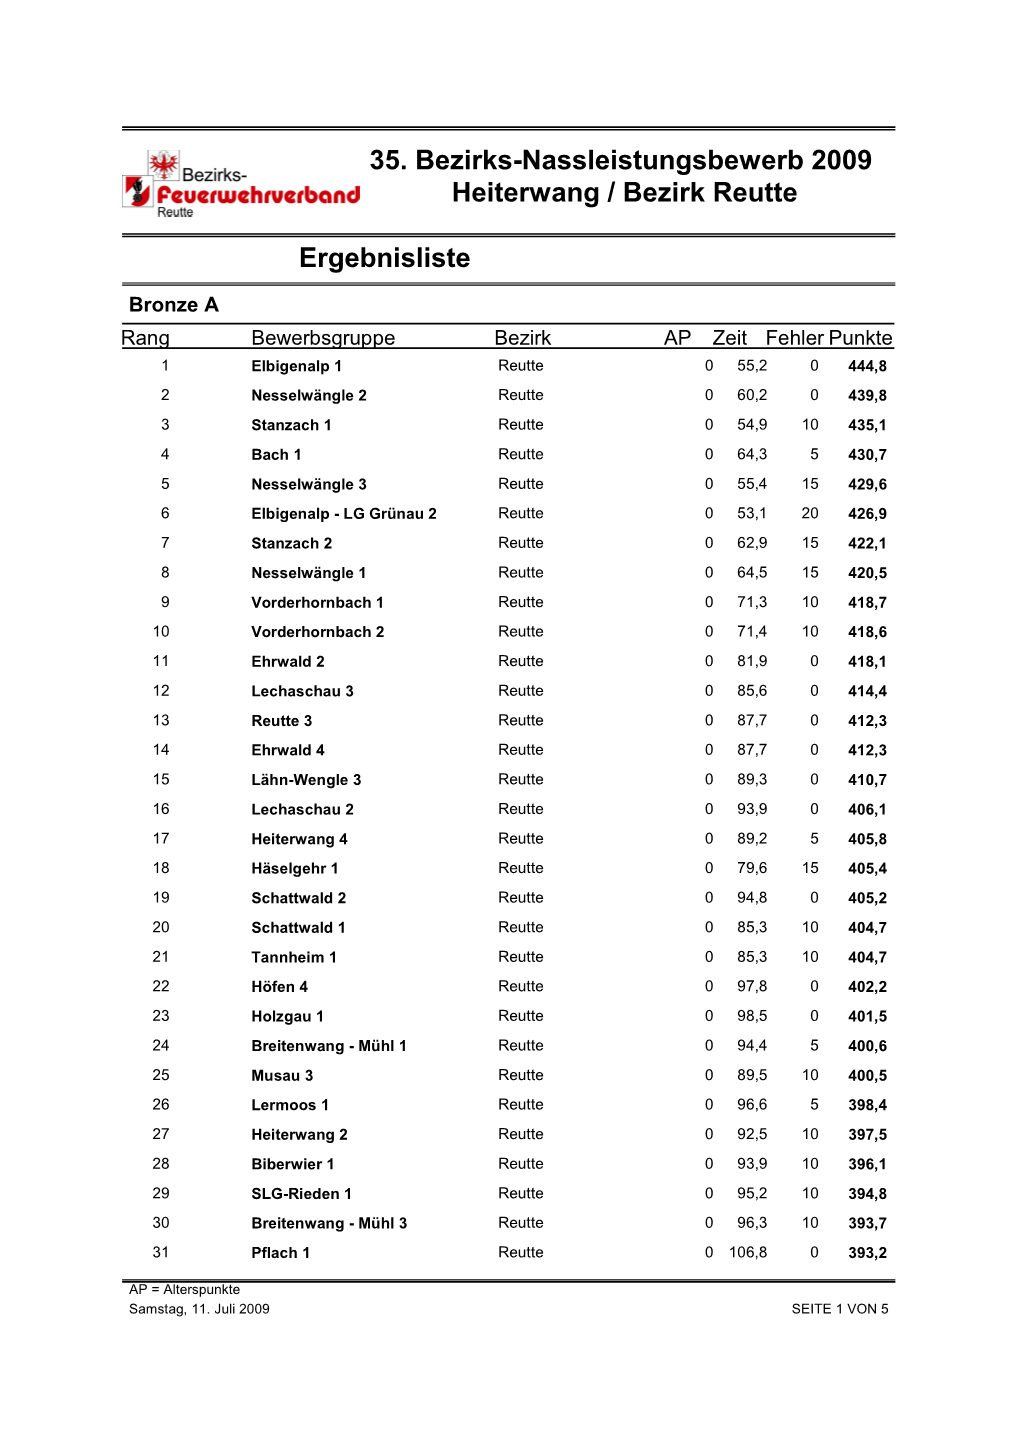 Ergebnisliste 35. Bezirks-Nassleistungsbewerb 2009 Heiterwang